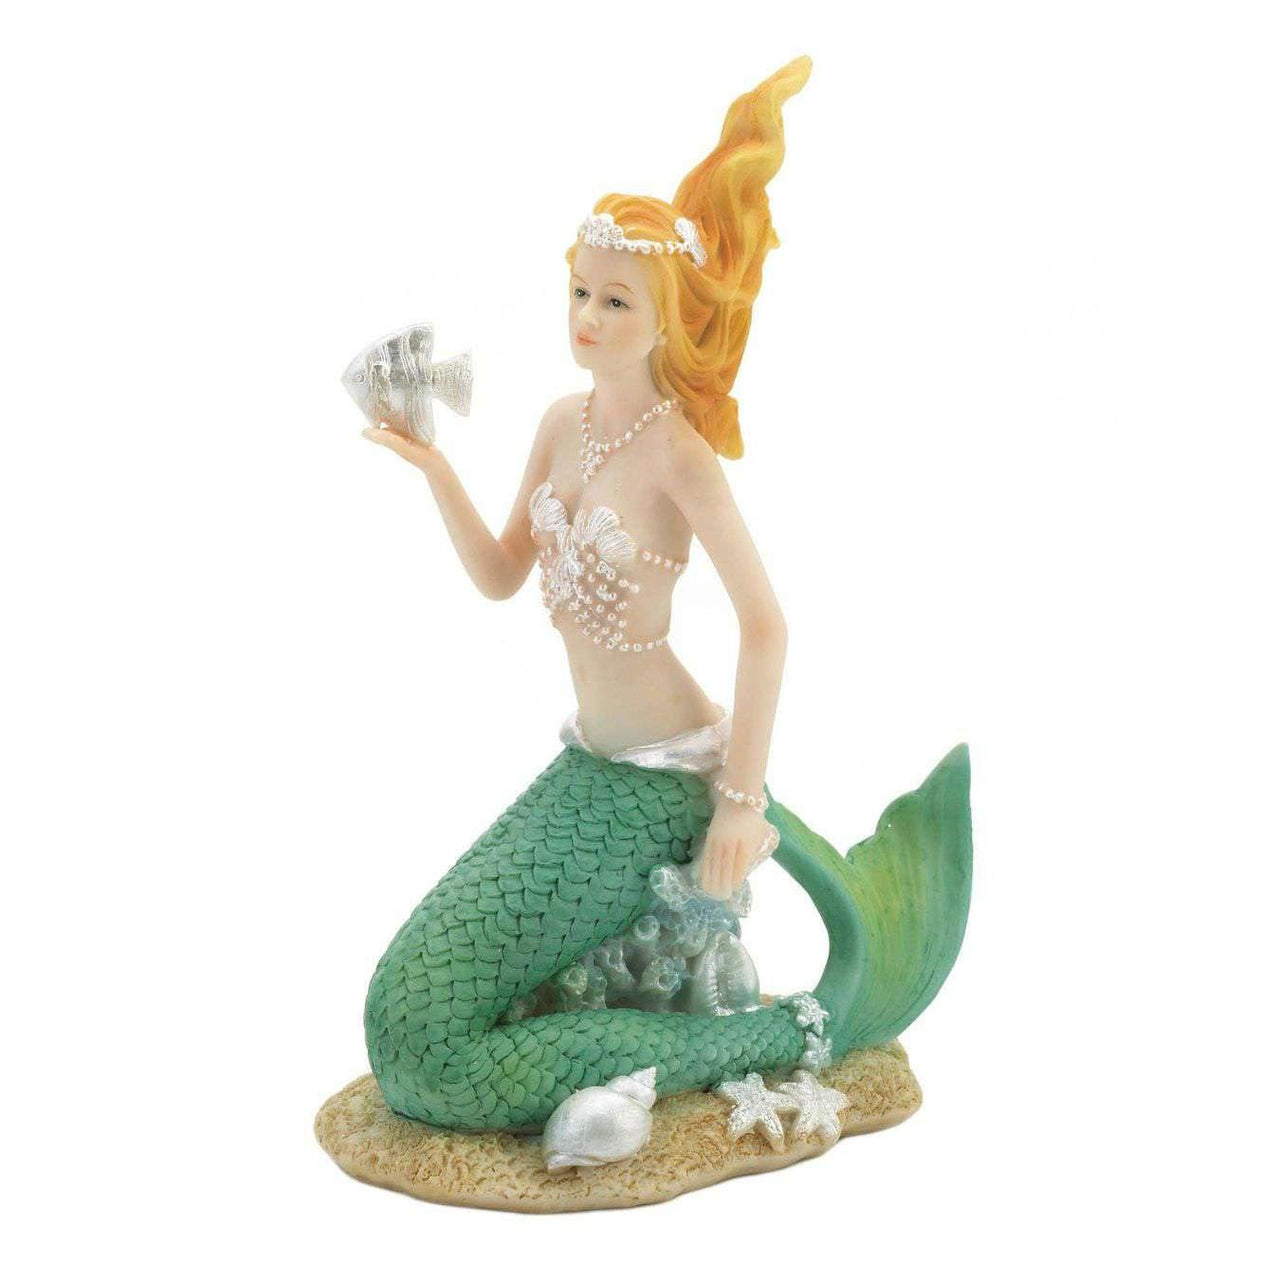 Mermaid Holding Fish Figurine